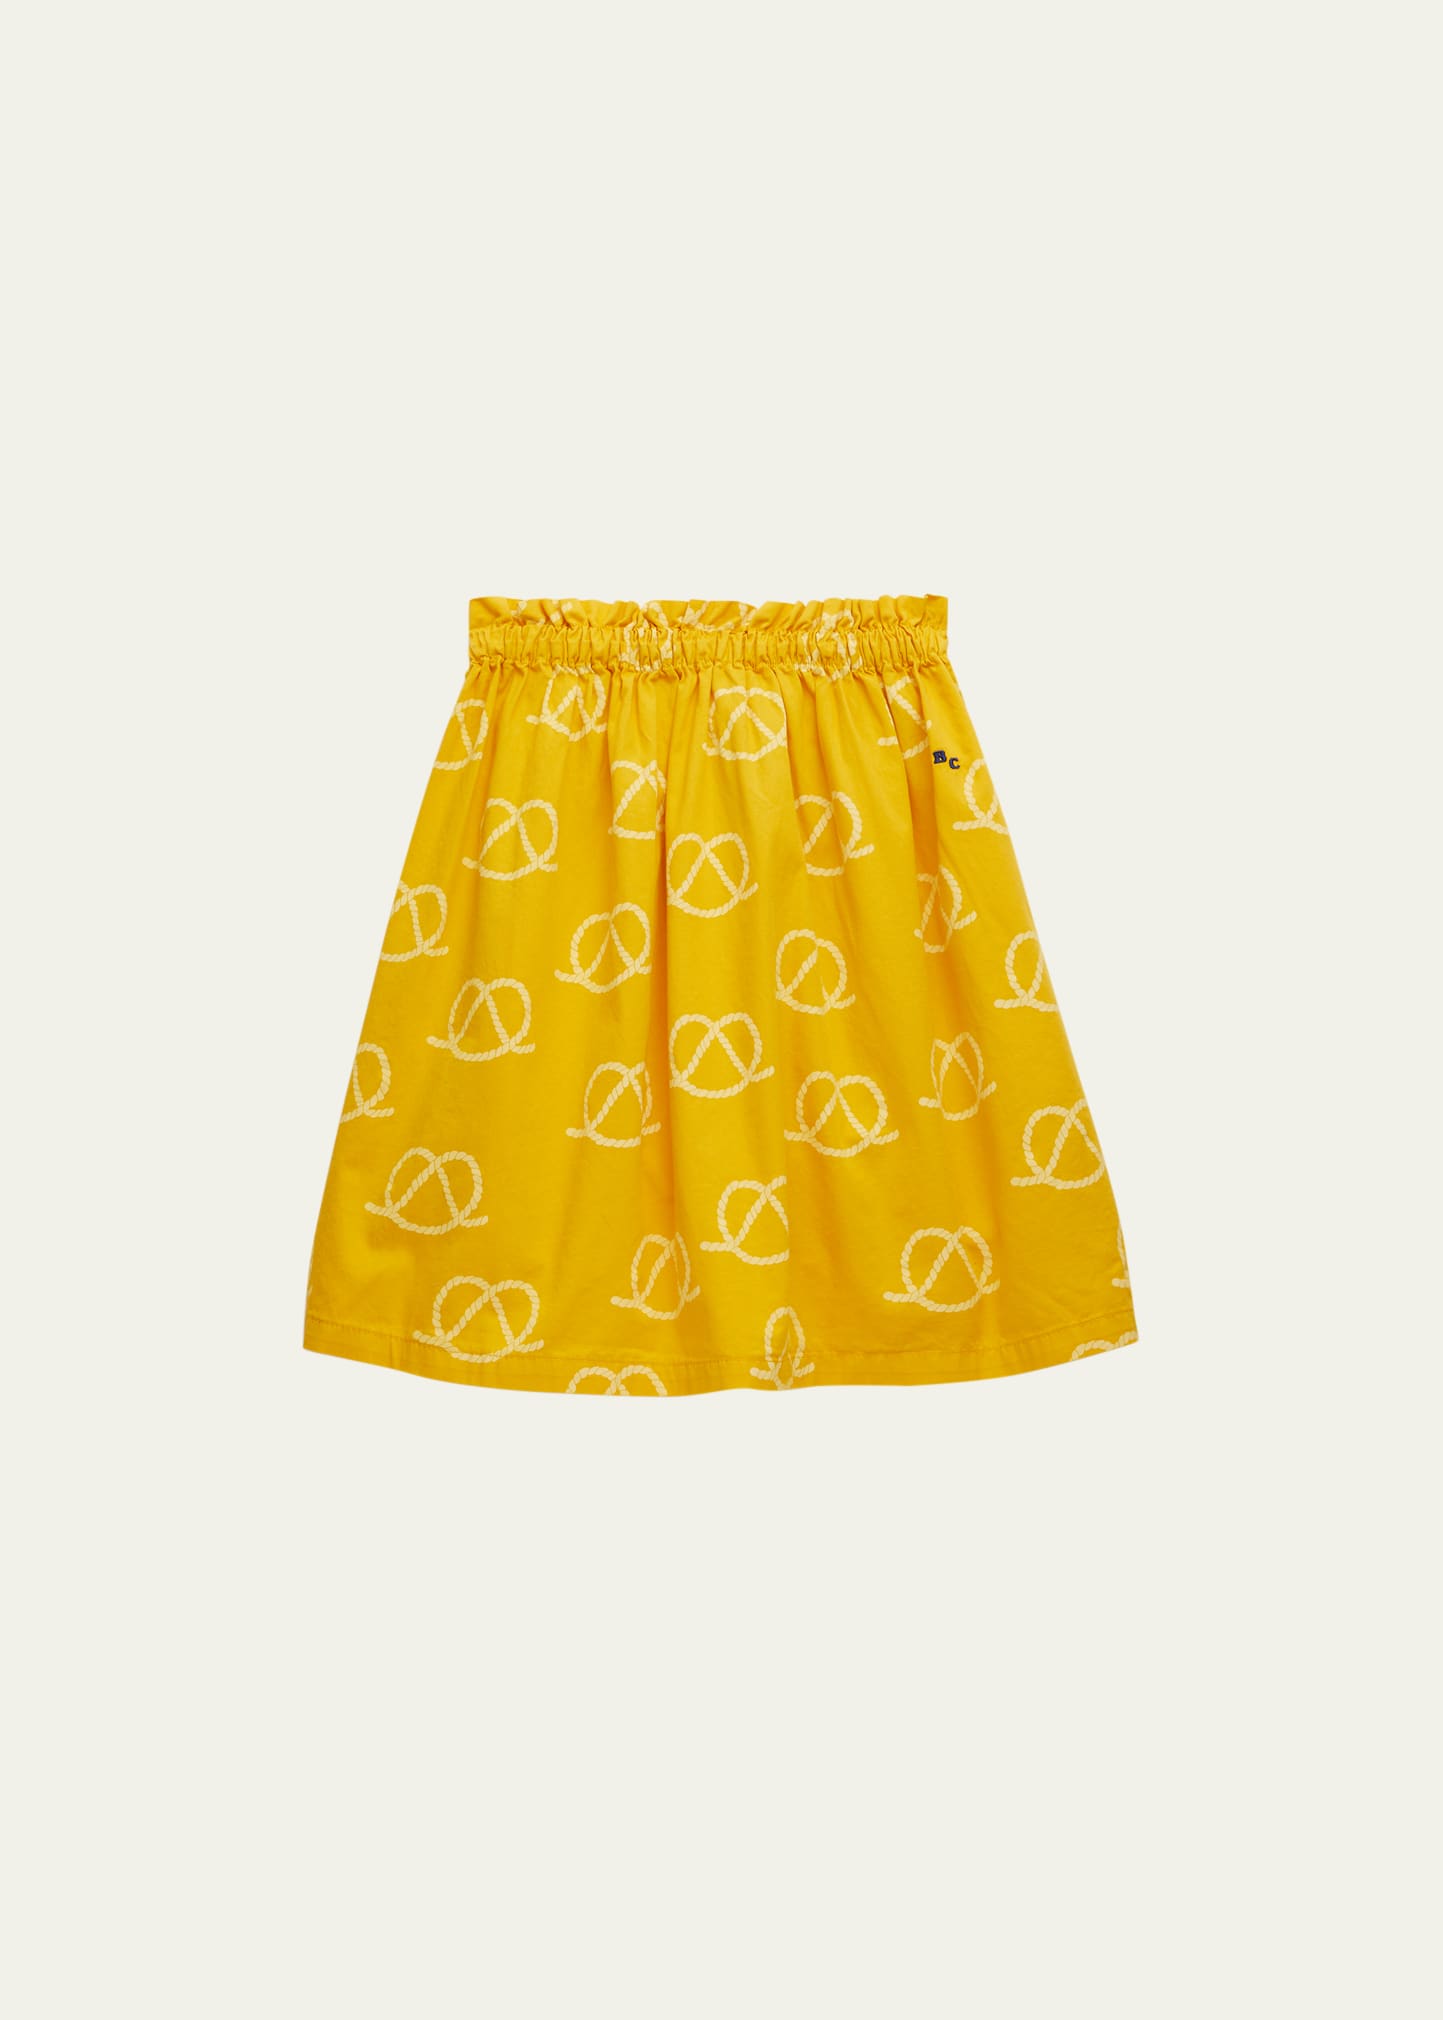 Bobo Choses Girl's Pretzel Rope-Print Skirt, Size 2-11